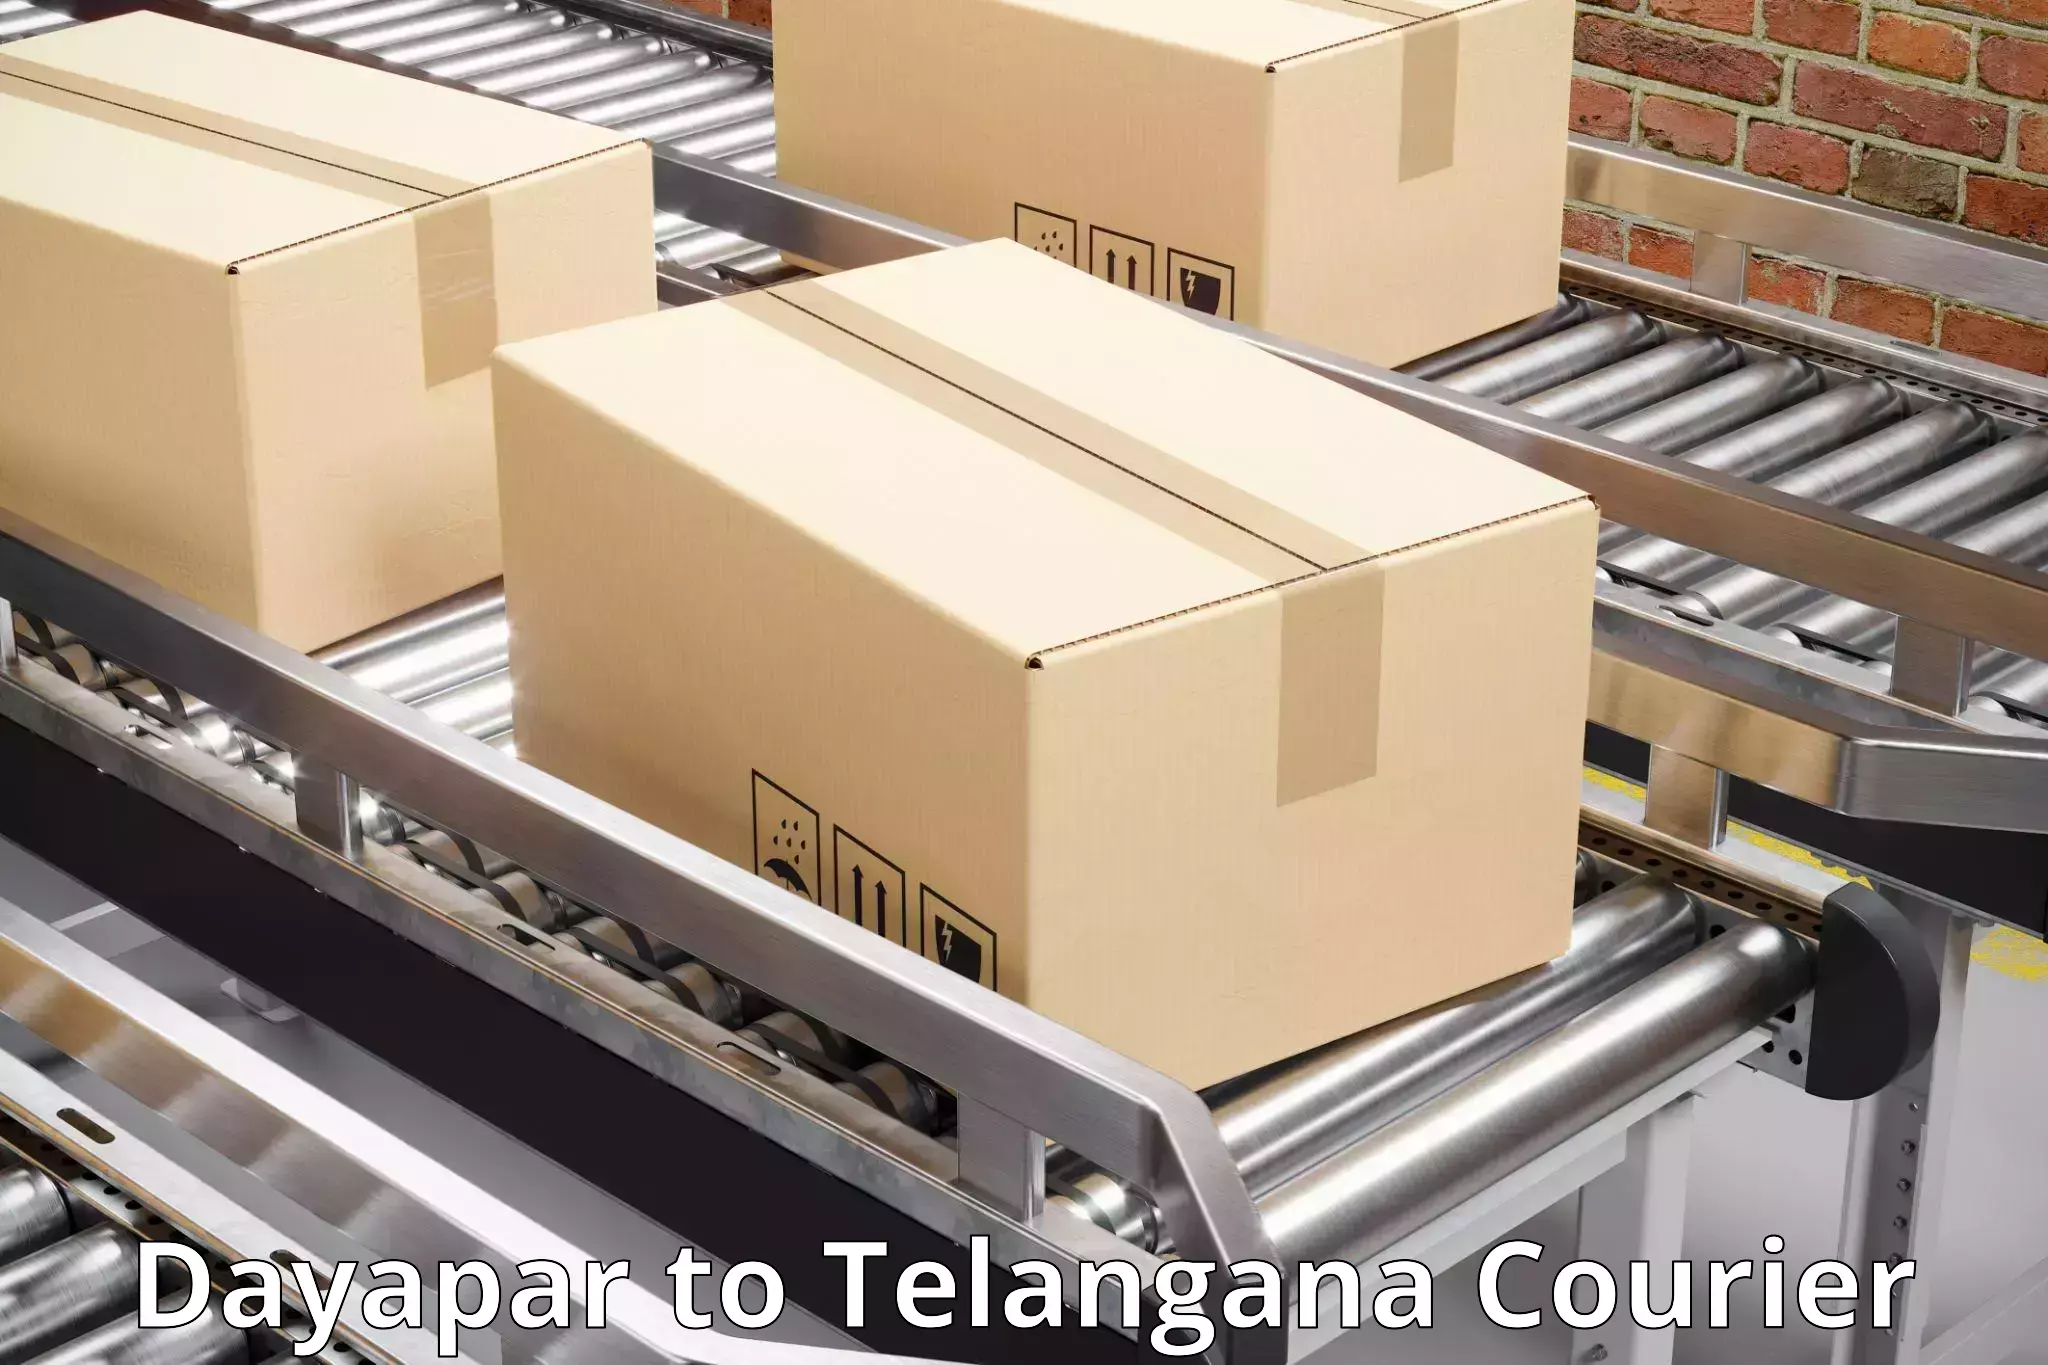 Quality courier services Dayapar to Telangana